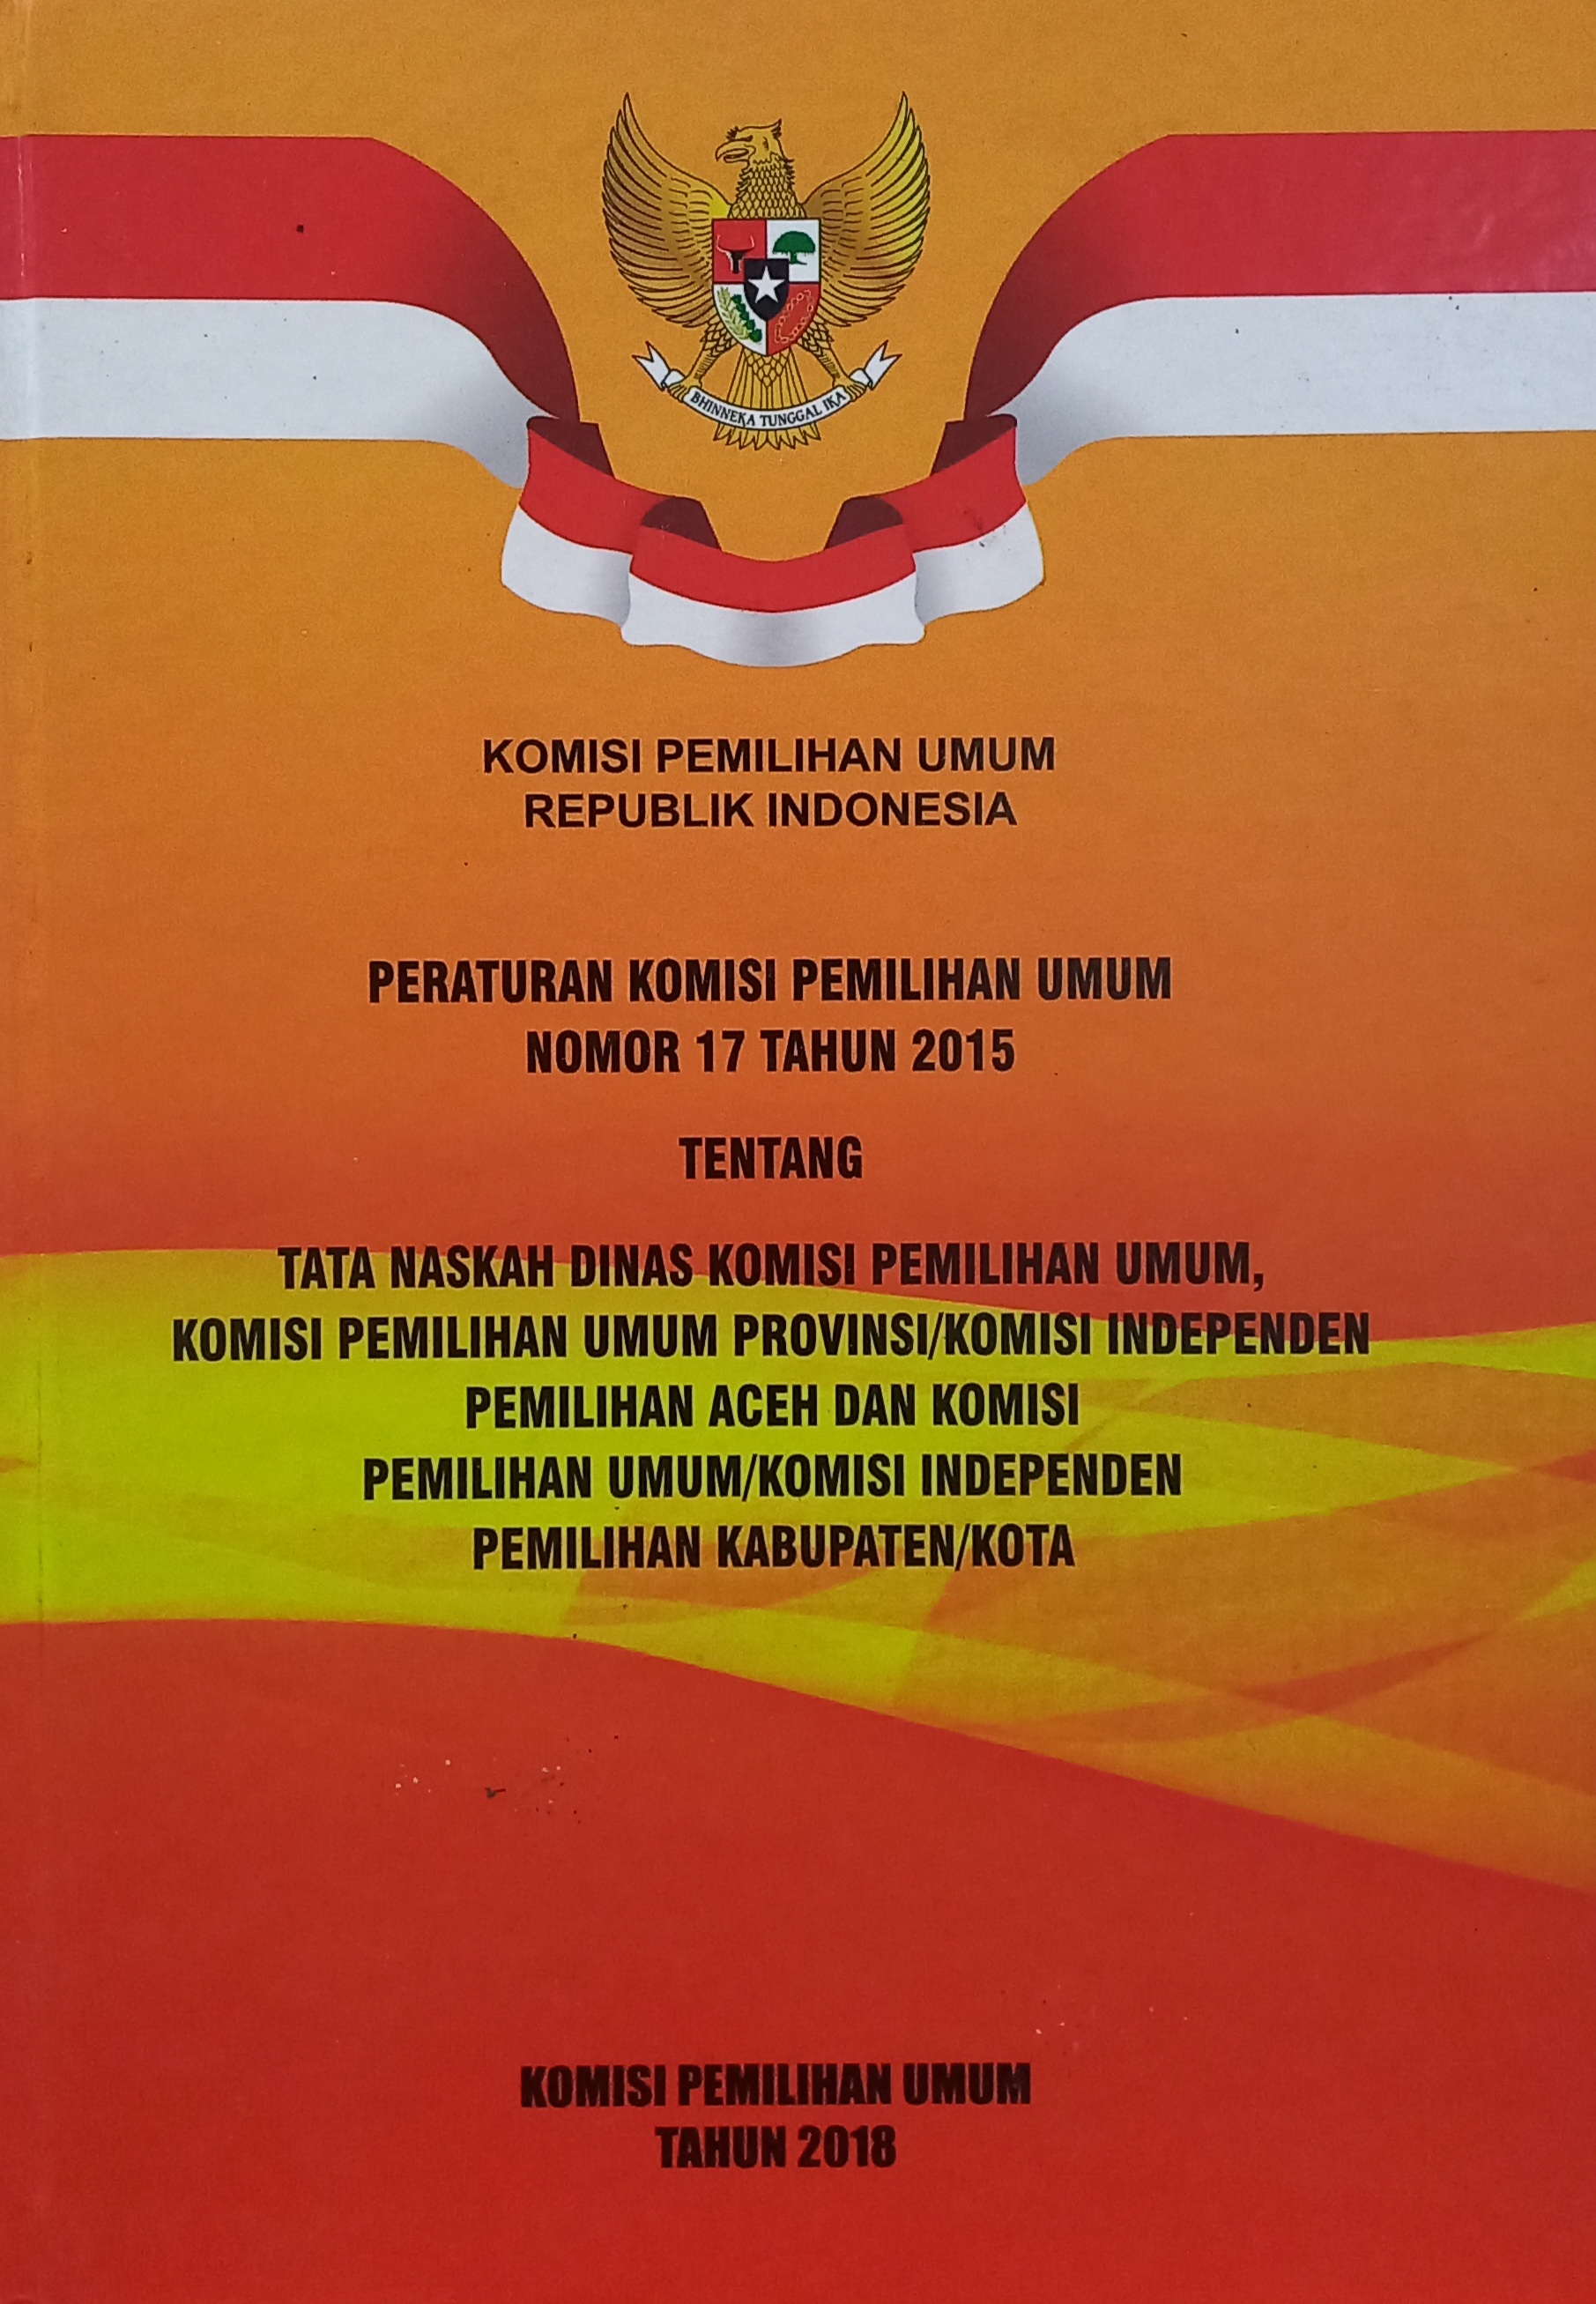 Peraturan Komisi Pemilihan Umum Nomor 17 Tahun 2015 Tentang Tata Naskah Dinas Komisi Pemilihan Umum, Komisi Pemilihan Umum Provinsi/Komisi Independen Pemilihan Aceh dan Komisi Pemilihan Umum/Komisi Independen Pemilihan Kabupaten/Kota